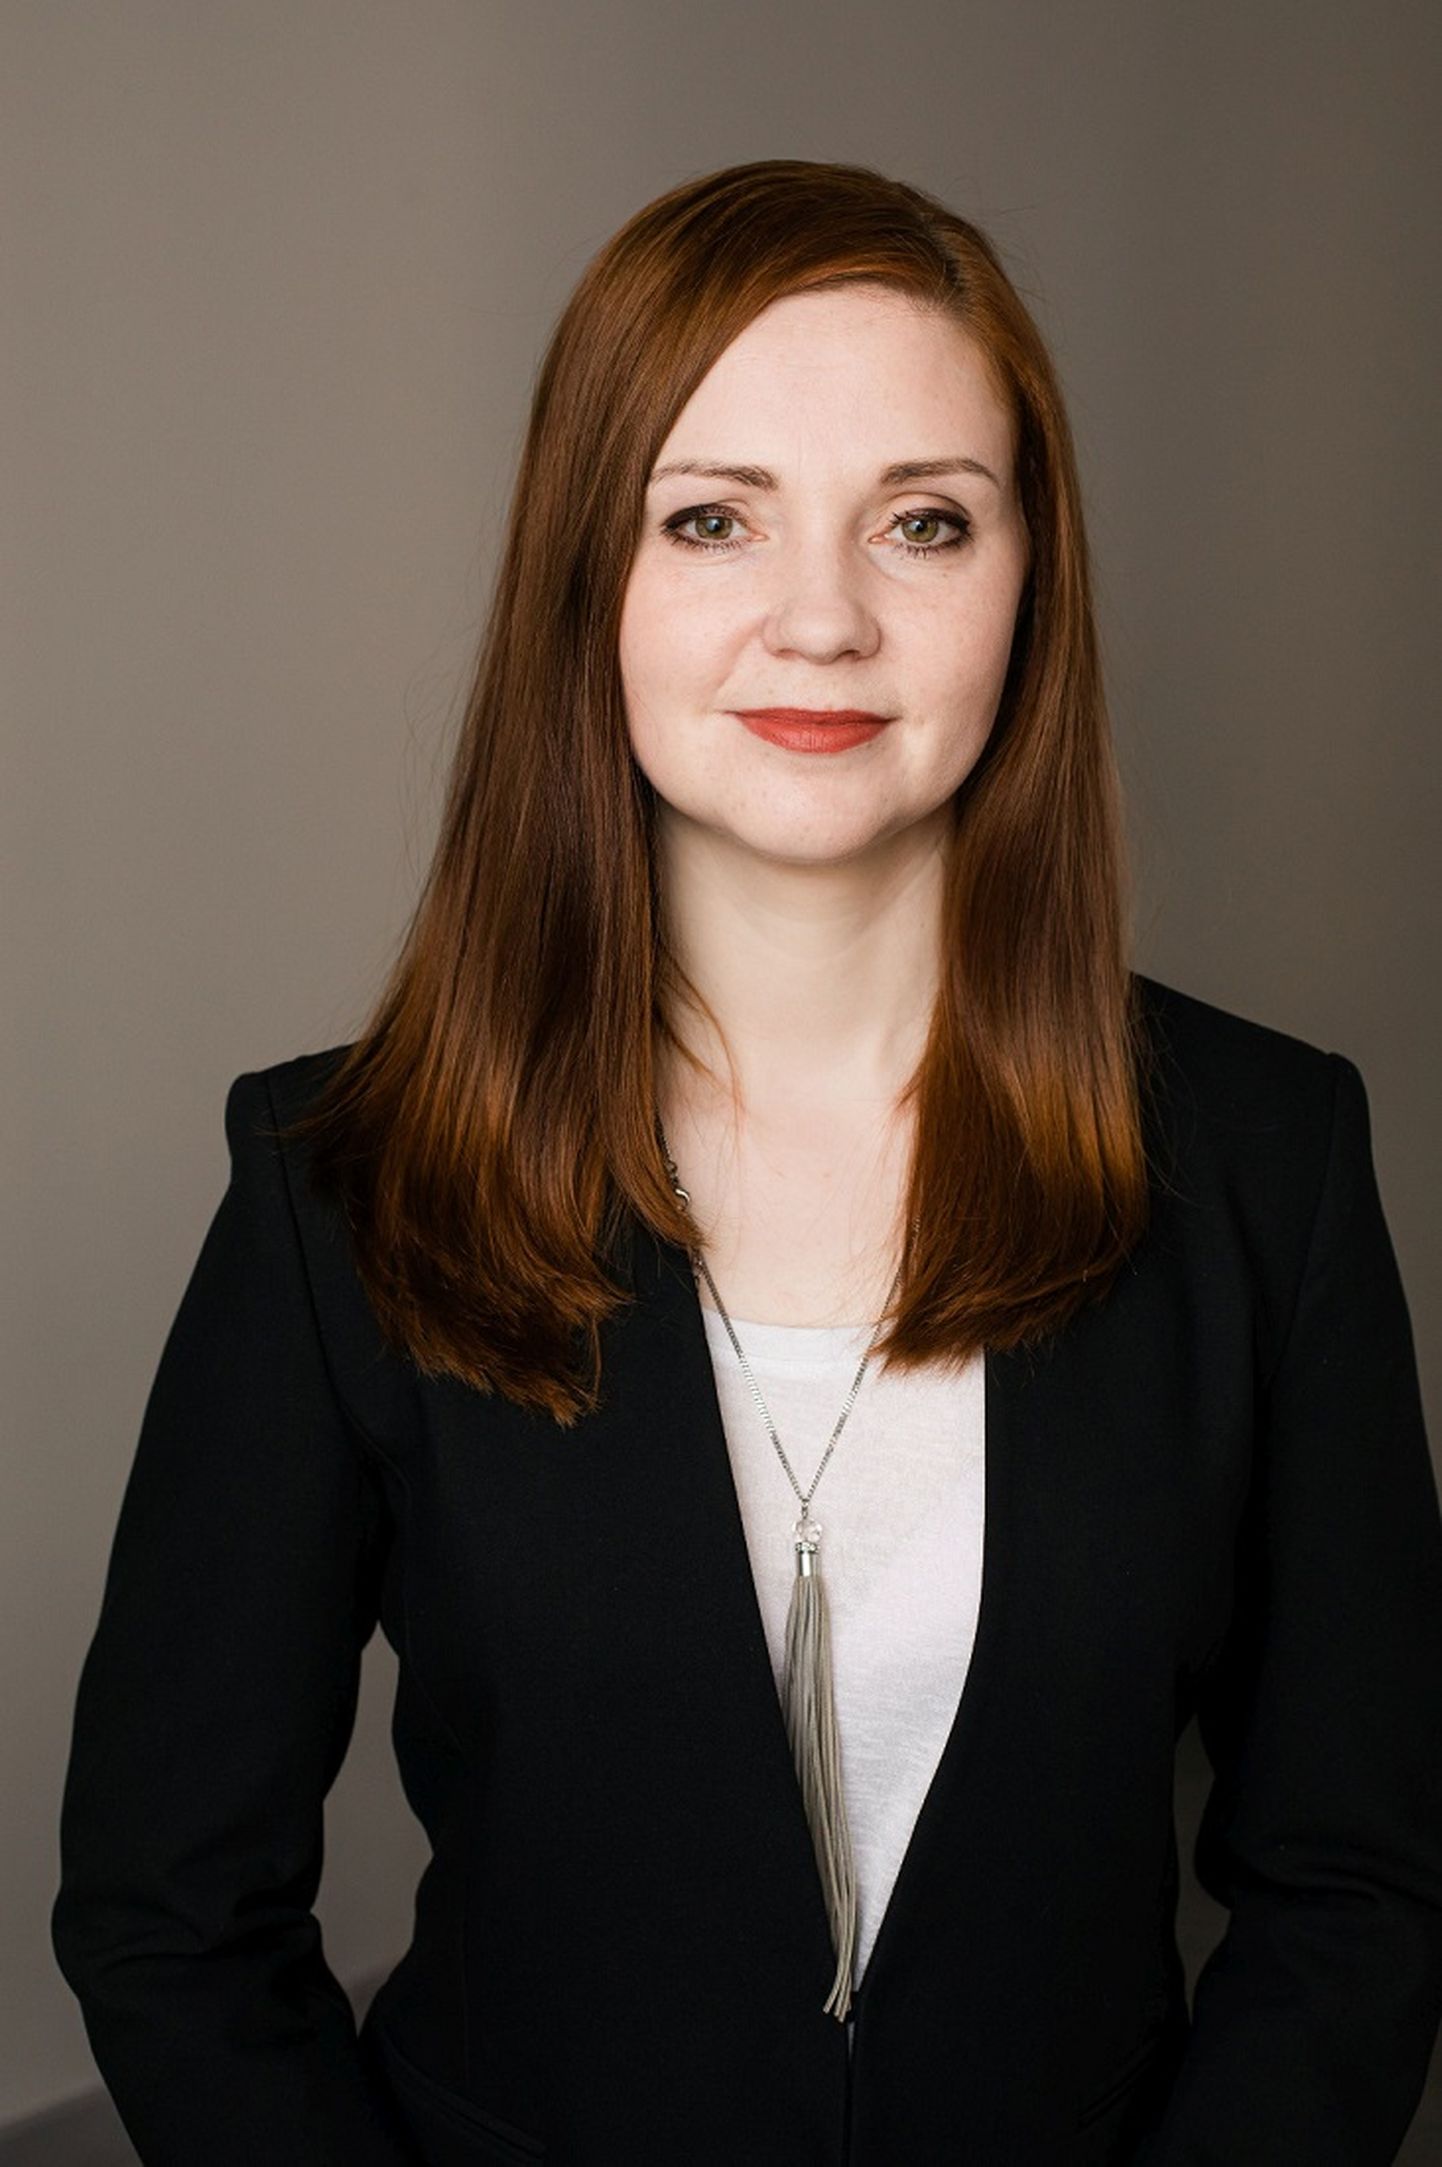 Зайга Пуце, директор секретариата Фонда общественной интеграции